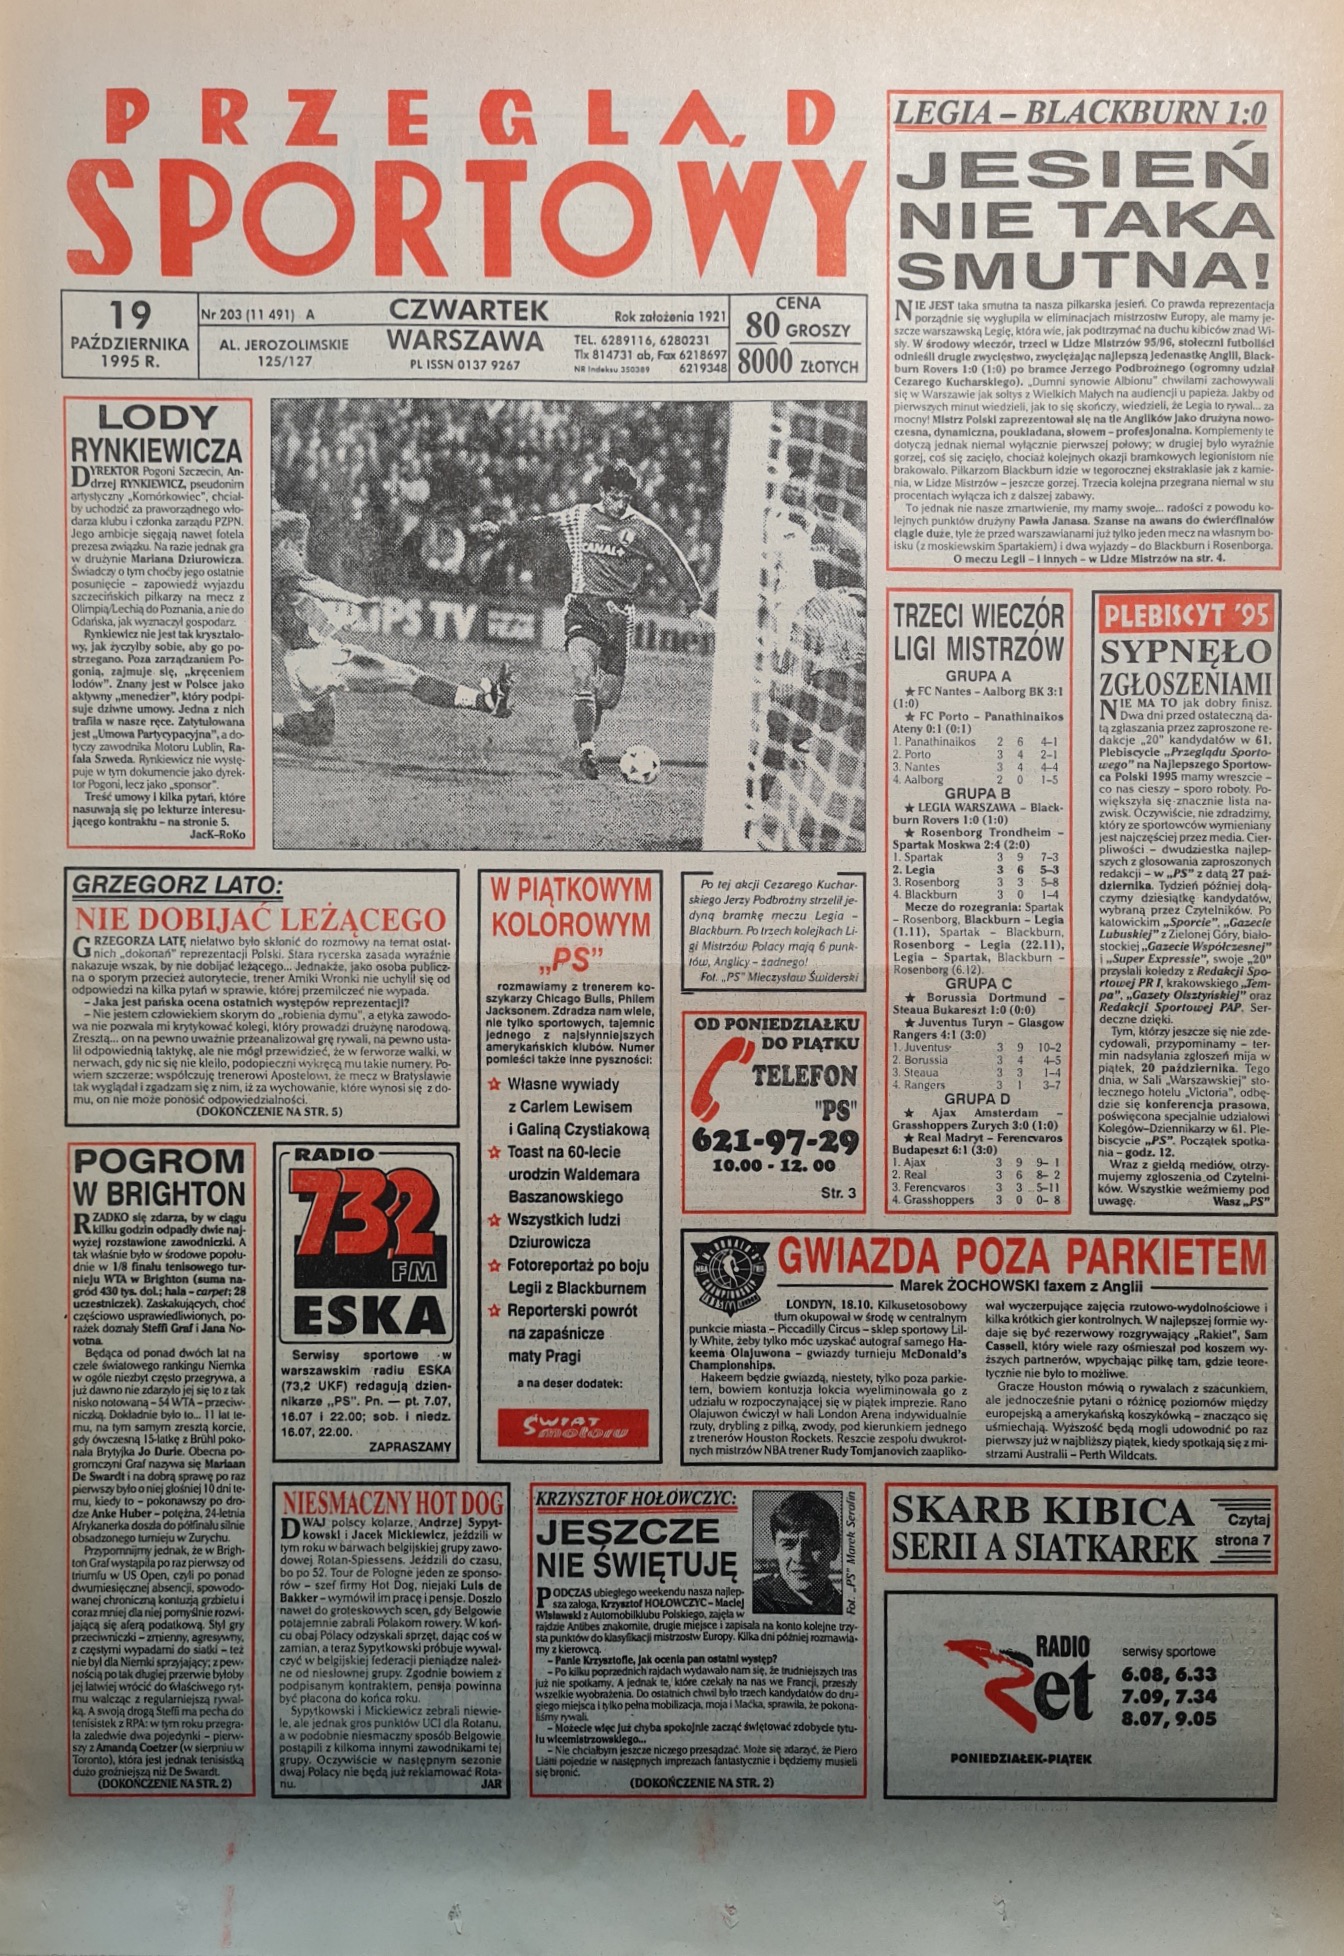 Przegląd Sportowy po meczu Legia Warszawa - Blackburn Rovers 1:0 (18.10.1995)